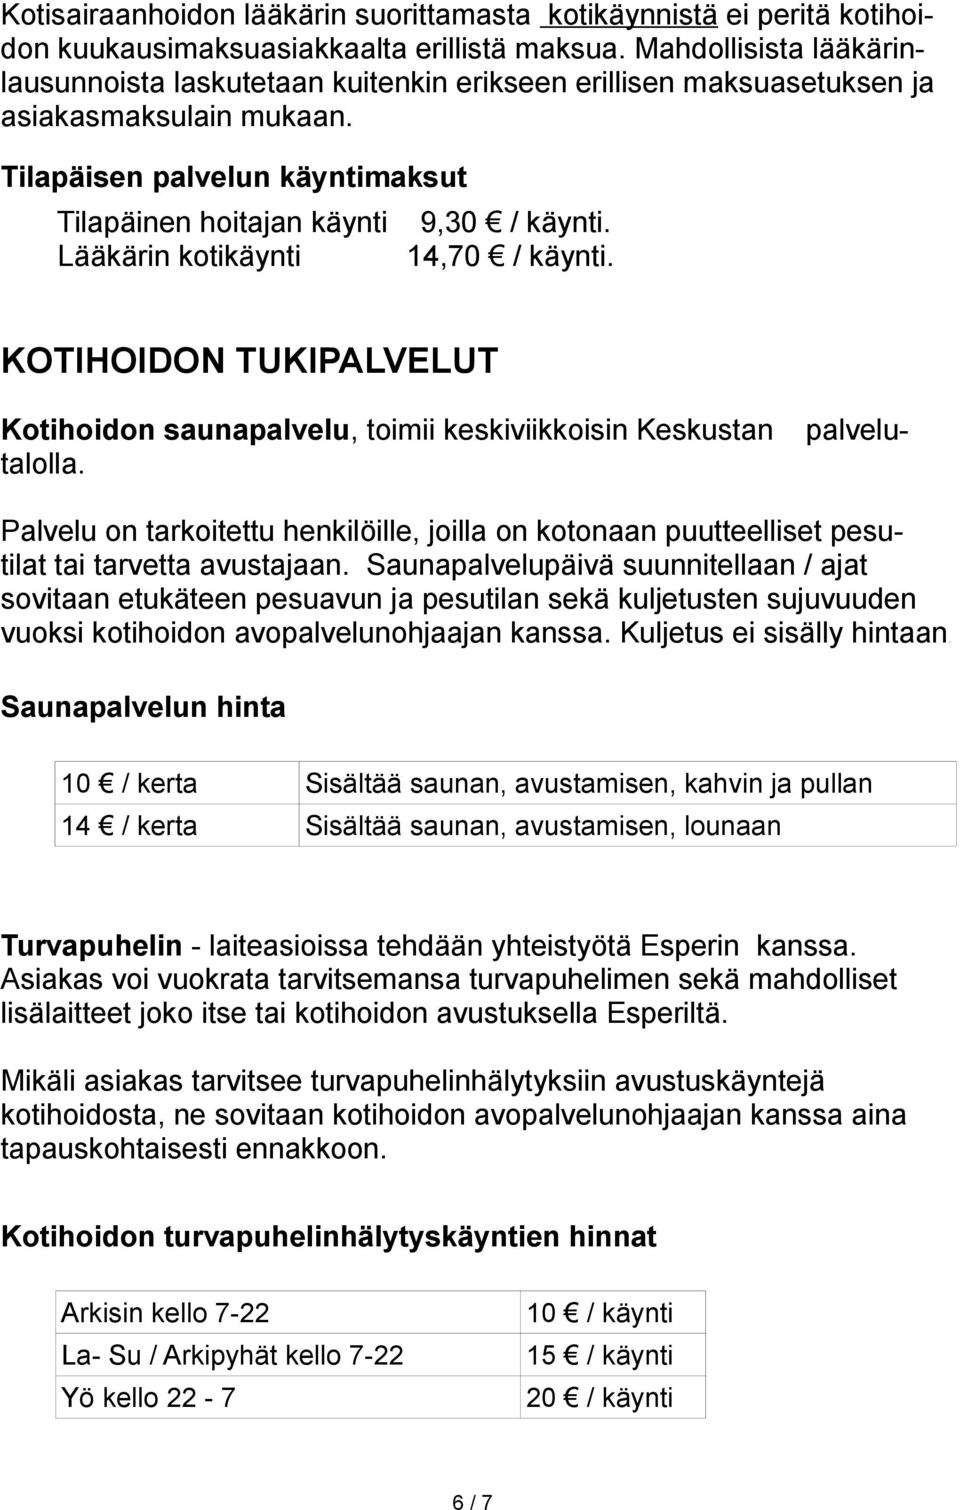 Tilapäisen palvelun käyntimaksut Tilapäinen hoitajan käynti Lääkärin kotikäynti 9,30 / käynti. 14,70 / käynti.